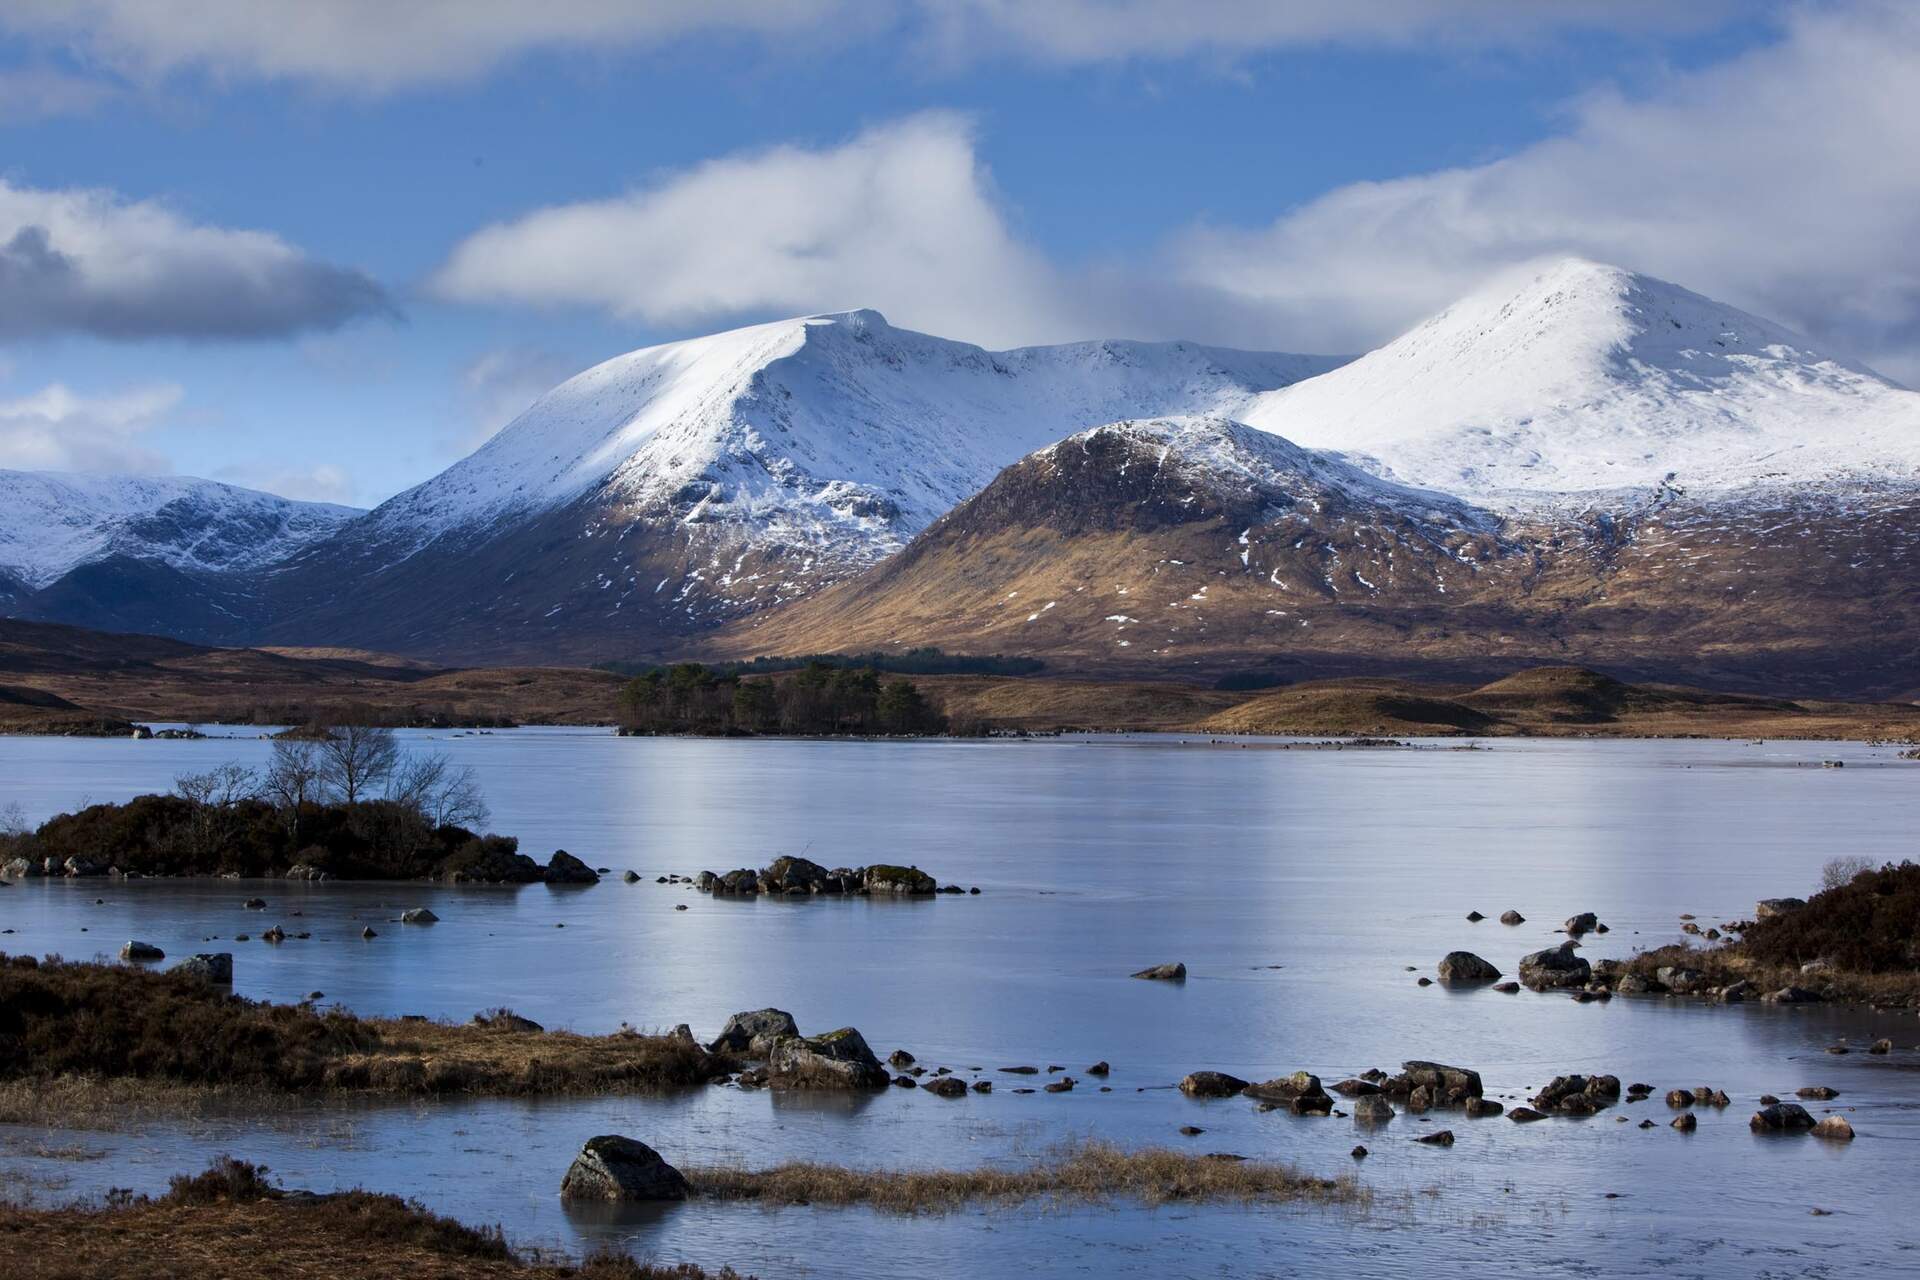 Schottland - Mythos der Highlands und Inseln (Live Reportage) - Szenenbild 4 von 5